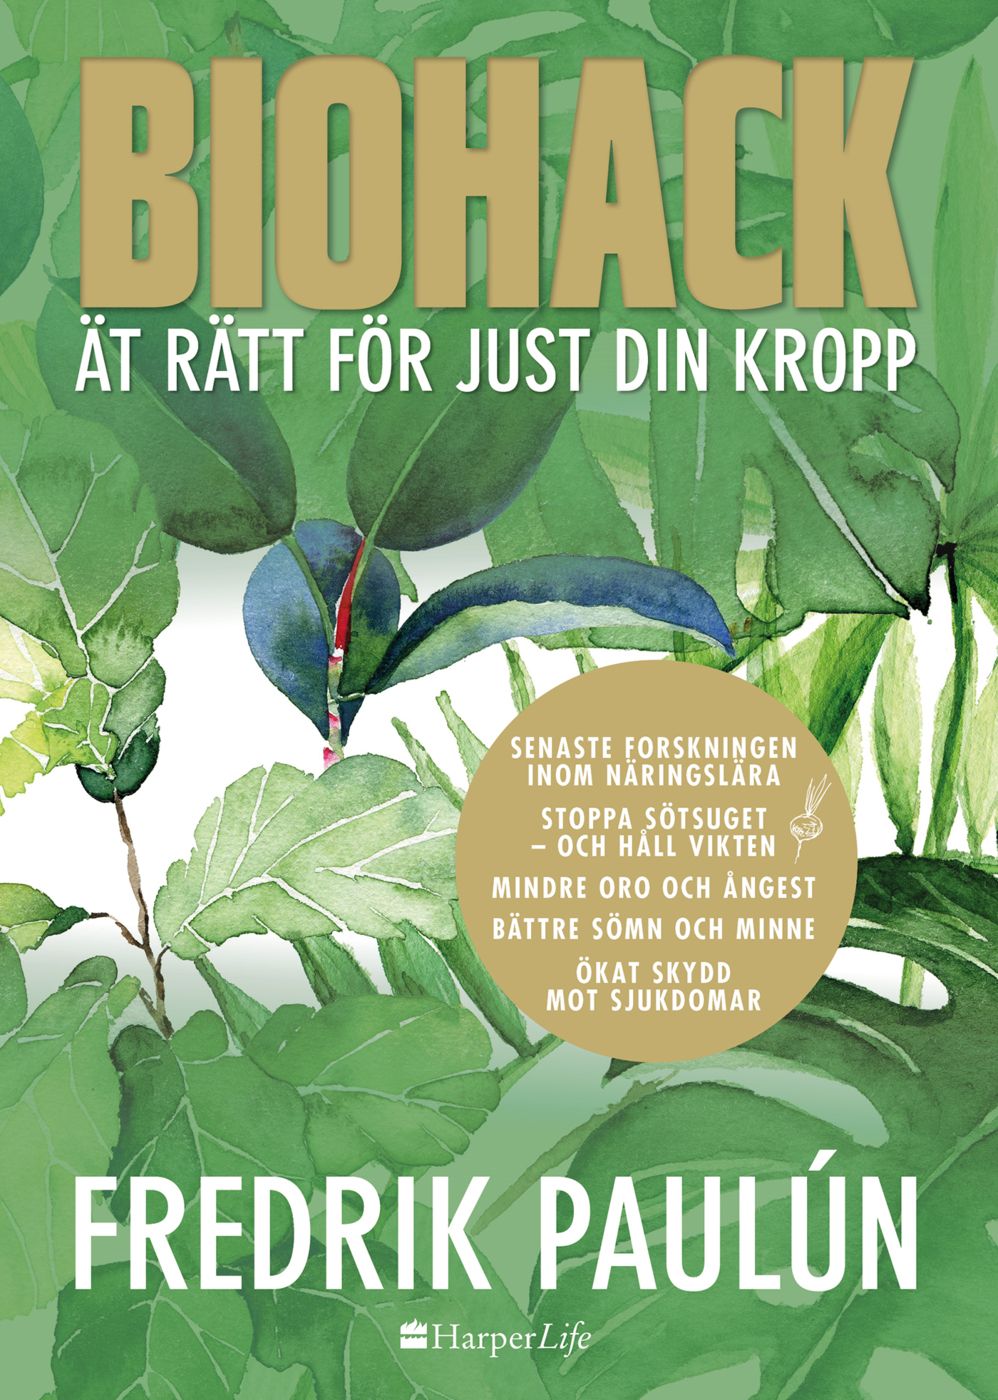 Biohack - ät rätt för just din kropp, e-bok av Fredrik Paulún